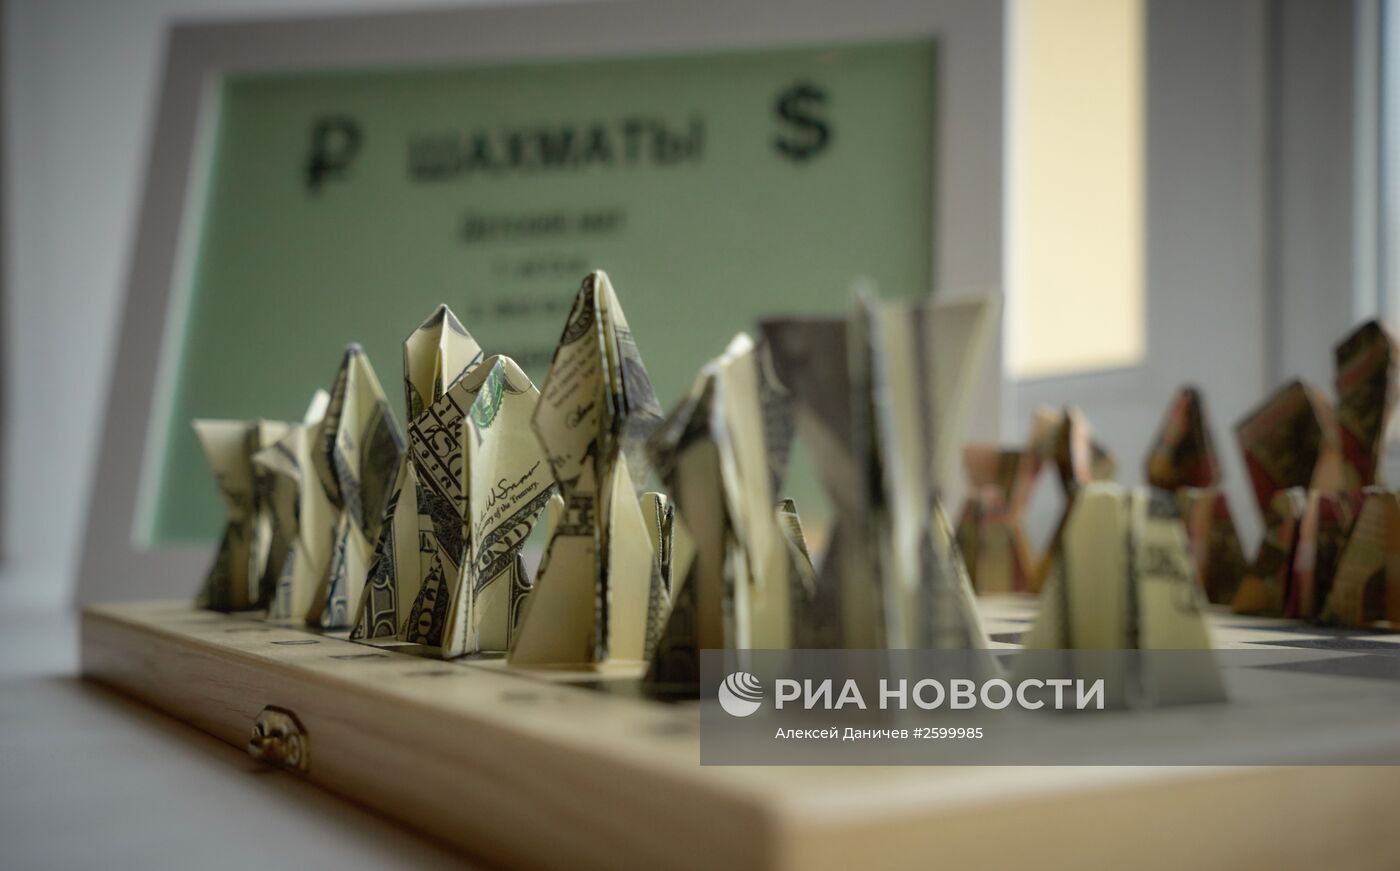 Выставка "Оригами на 100 долларов" в Санкт-Петербурге